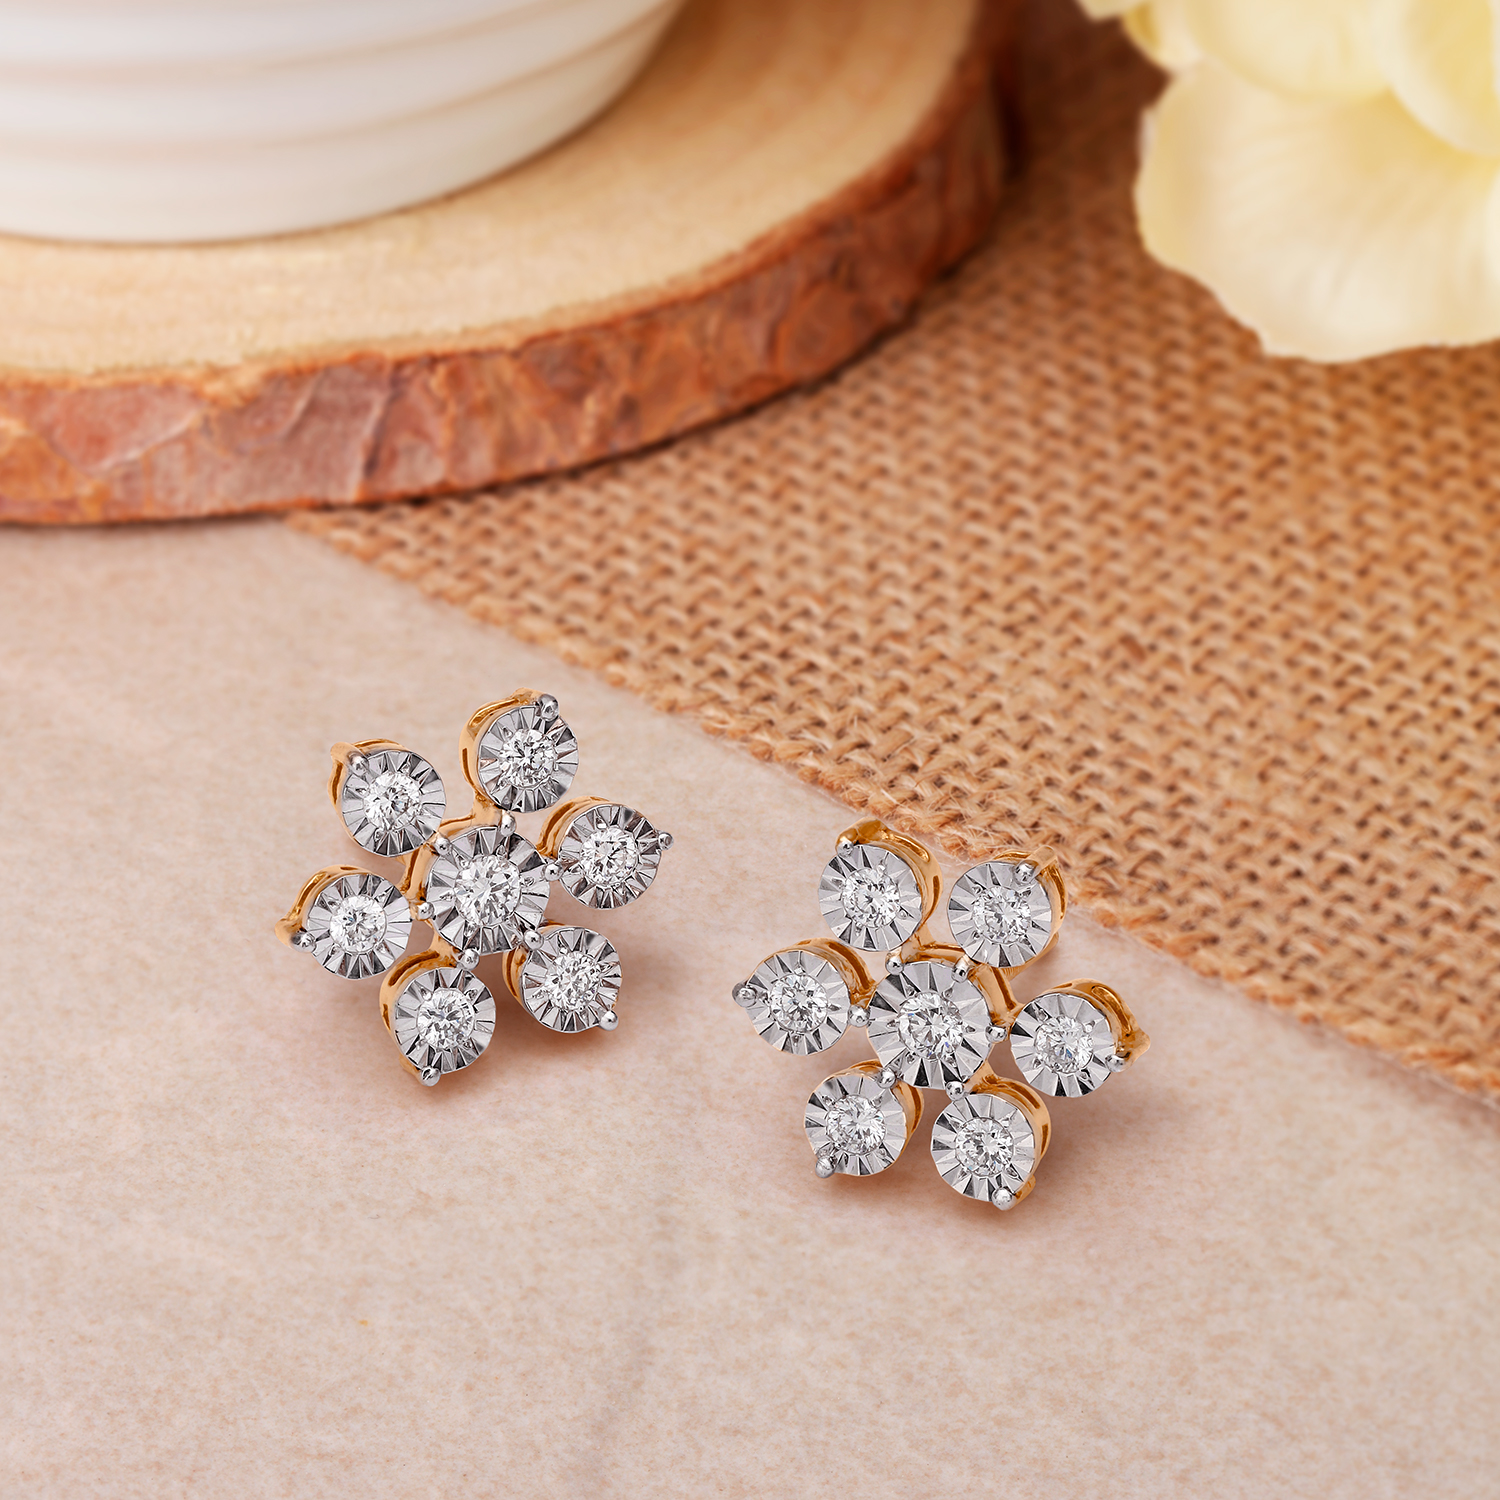 Buy Seven Stone Diamond Earrings Online In India